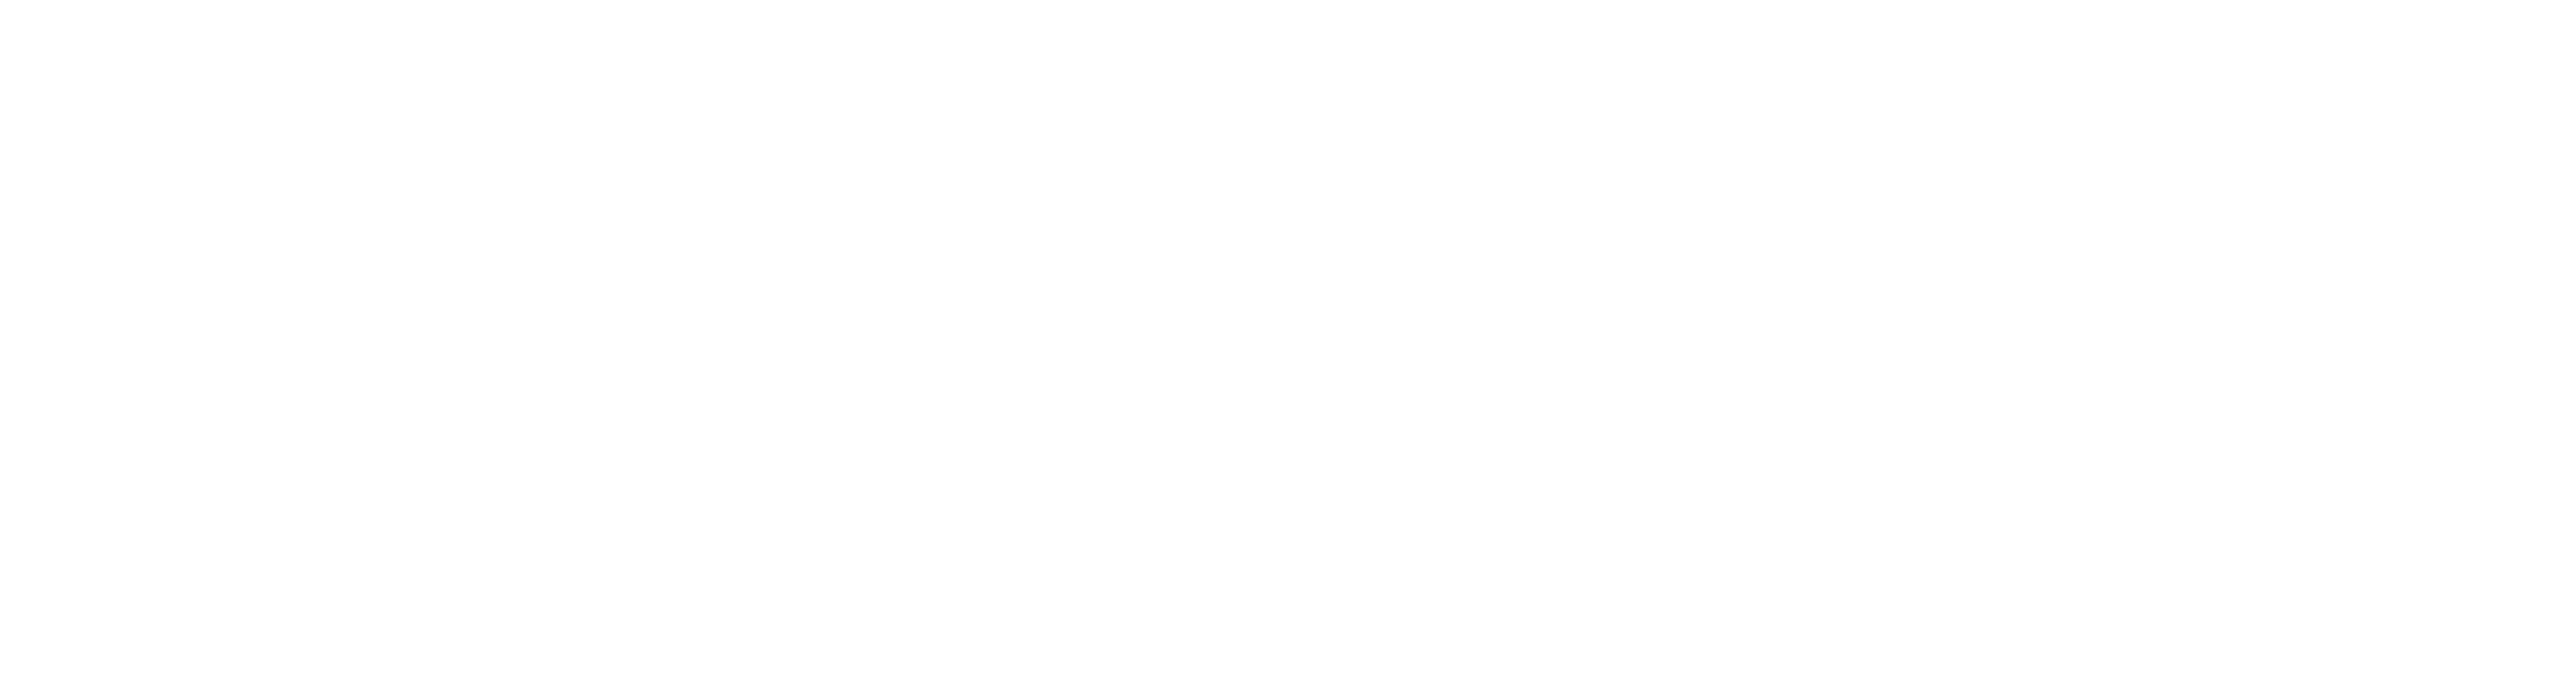 umetv media logo white